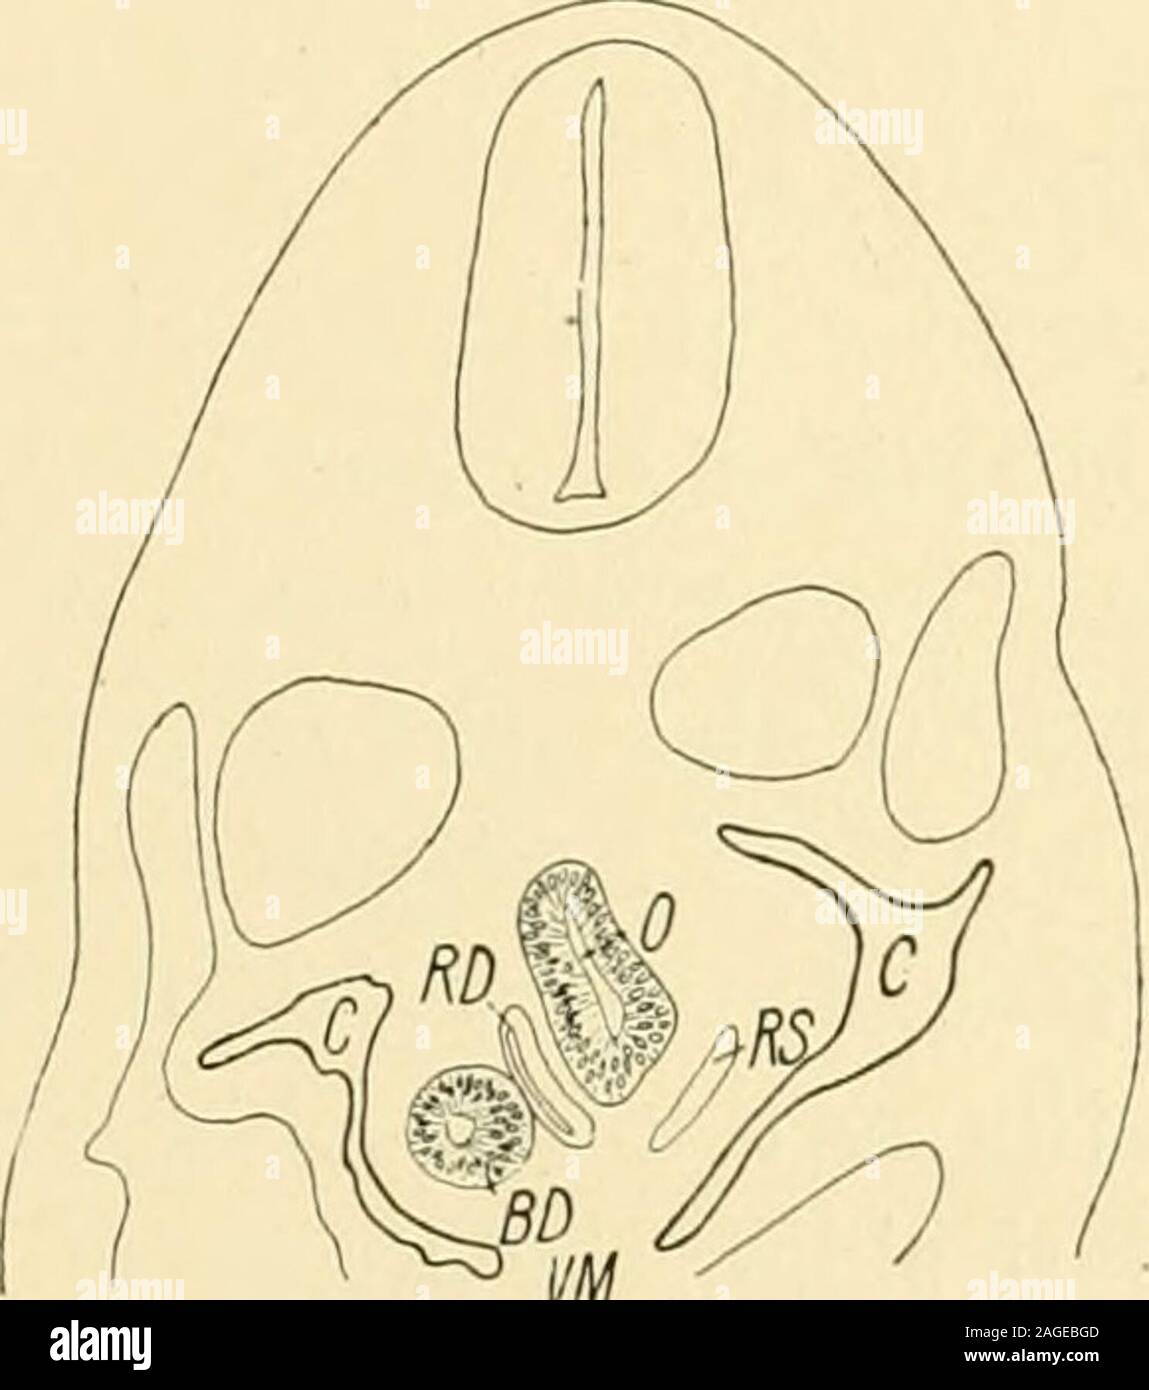 . Le journal américain de l'anatomie. 39 Comme je l'précoces possèdent des stades plus où les deux systèmes sont en opencommunication à un niveau plus bas que ce qui est indiqué dans ce spécimen. Le Mésocarde à leniveau où commence postérieur (Fig. 7 VM), l'epithe-lium qui tapissent l'intestin antérieur est en forme et se compose, à l'exception de l'ventraland angles dorsale, généralement d'une double couche de cellules. Dans l'ébauche de thelungs (Fig. 8), il est légèrement plus élevé et montre une karyoki plus actif-netic processus. La même couche d'entoblaste s'étend dans l'primitivebronchi. À l'extrémité, la division cellulaire se déroule rapidement. L Banque D'Images